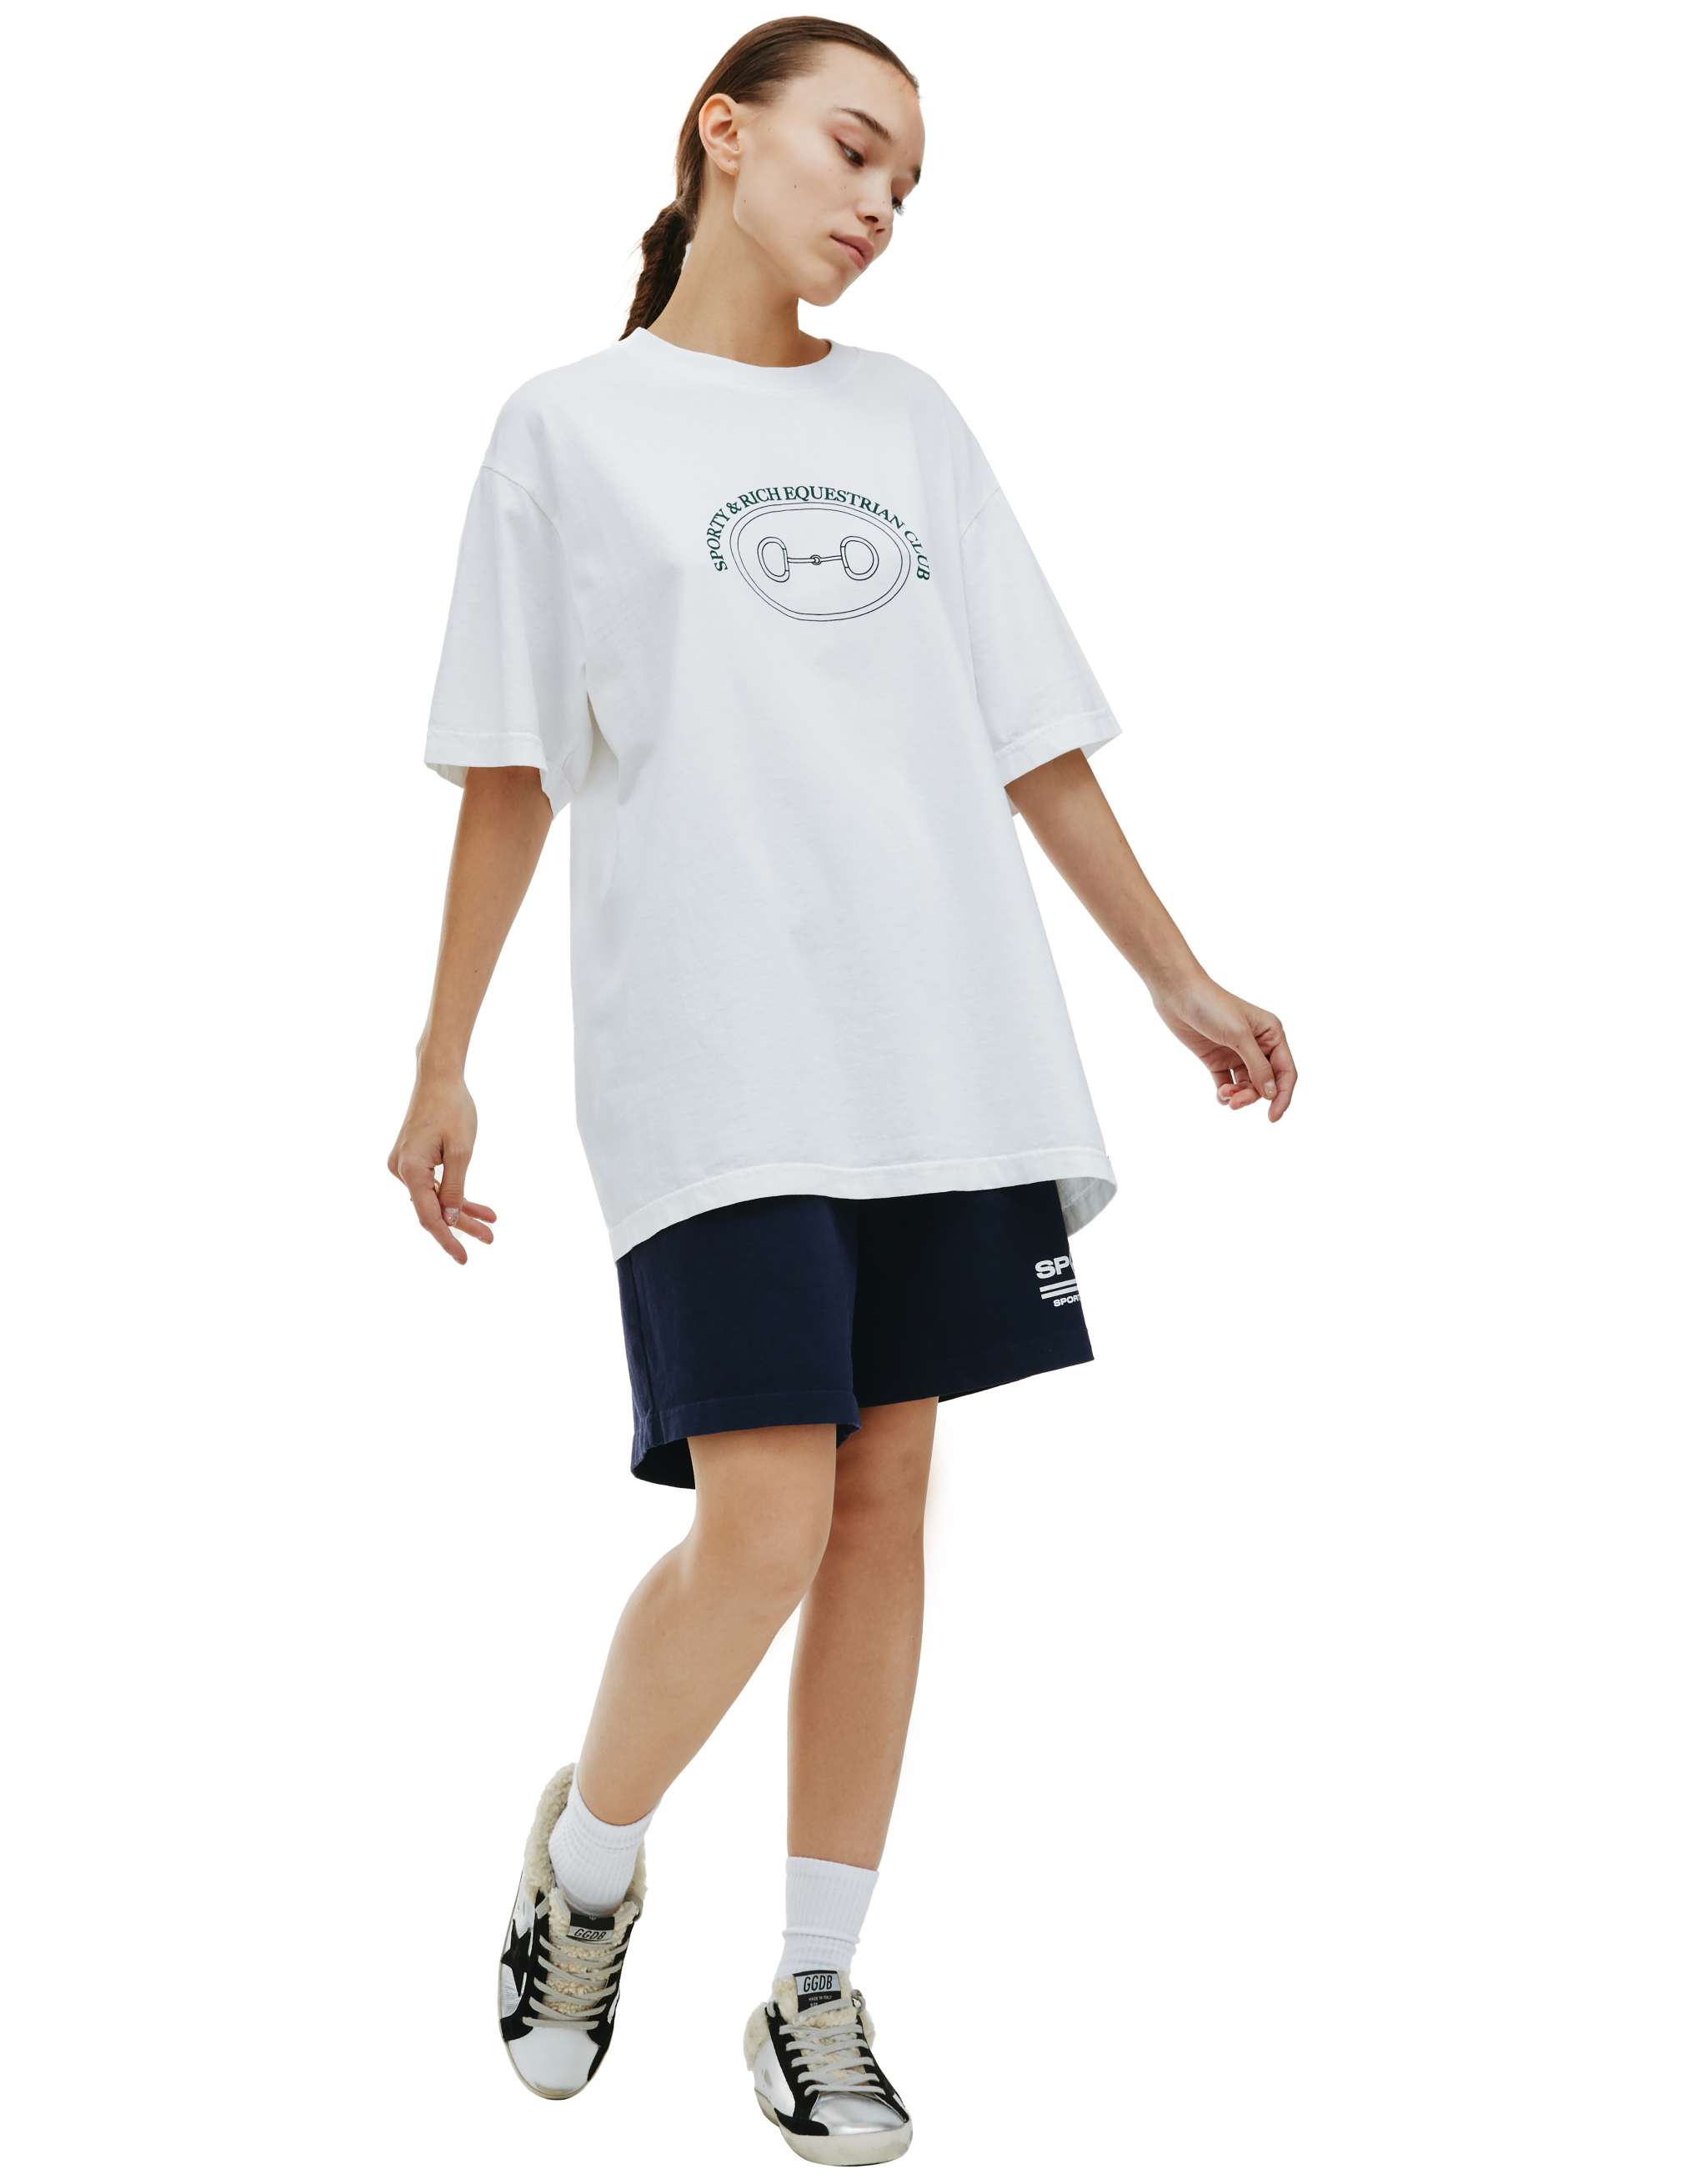 Белая футболка с принтом Equestrian club SPORTY & RICH TS494WH, размер XL;L;M